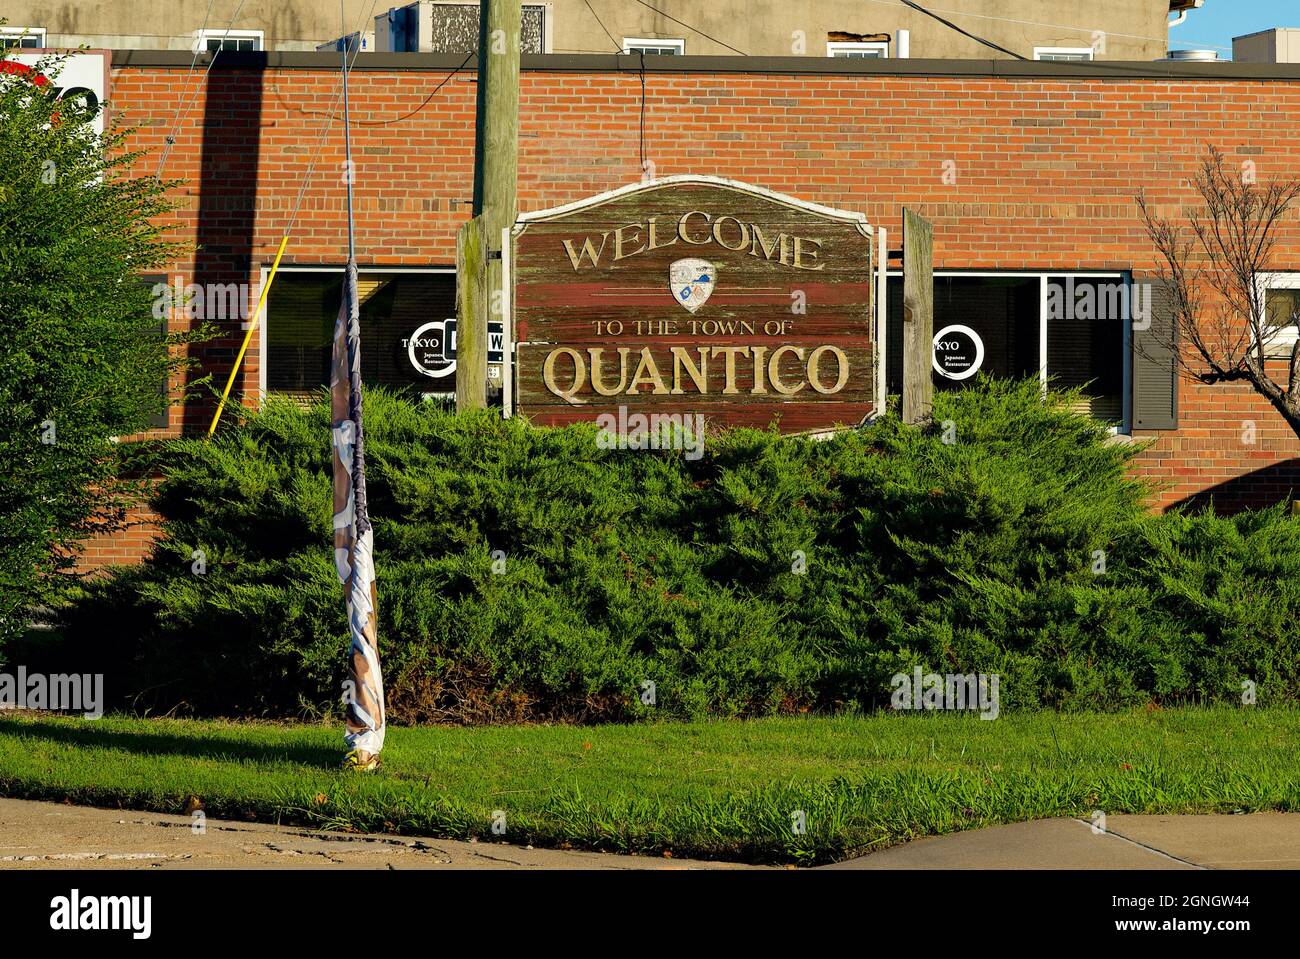 Quantico, Virginie, États-Unis - 23 septembre 2021 : panneau en bois accueillant les visiteurs de la ville historique de Quantico, à côté de la base des corps de Marines Quantico. Banque D'Images